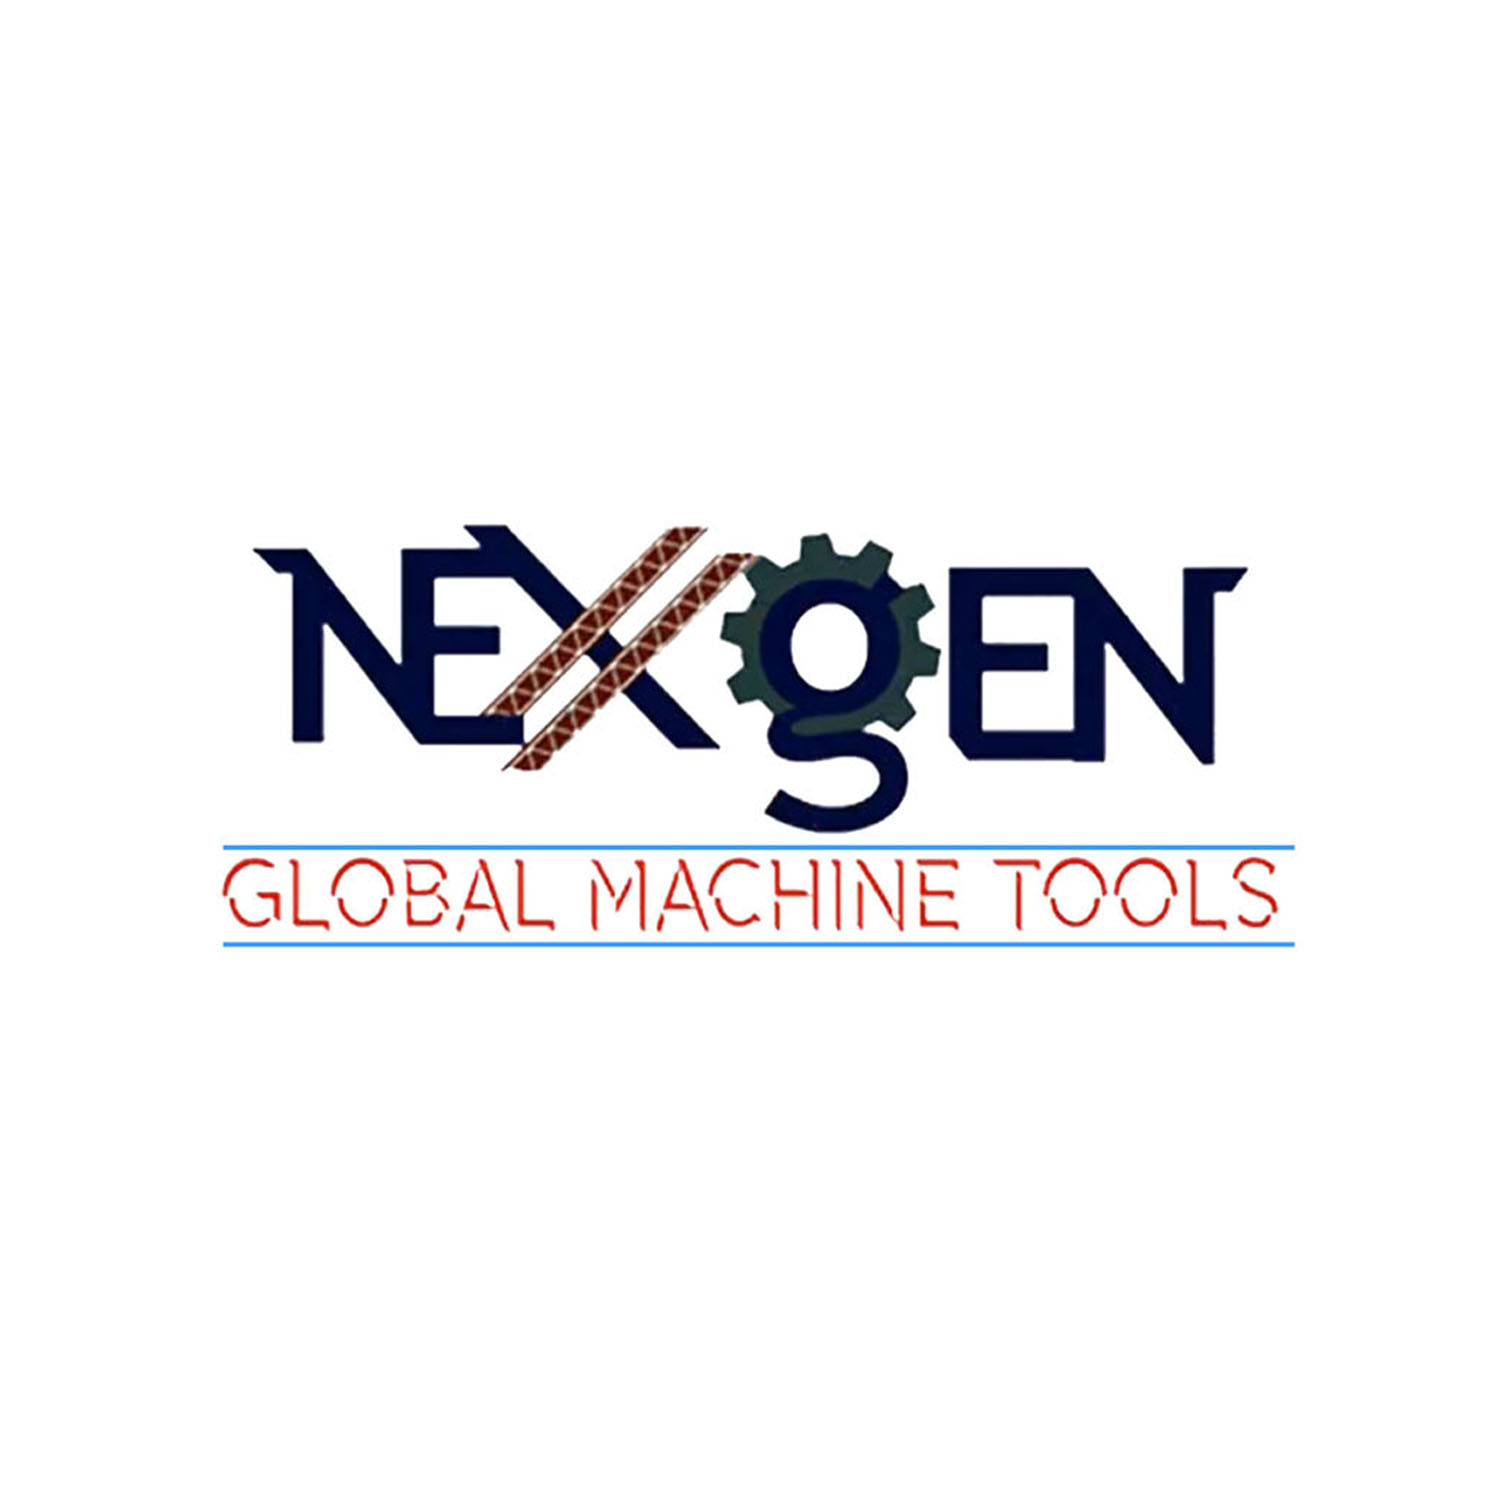 Nexxgen Global Machine Tools